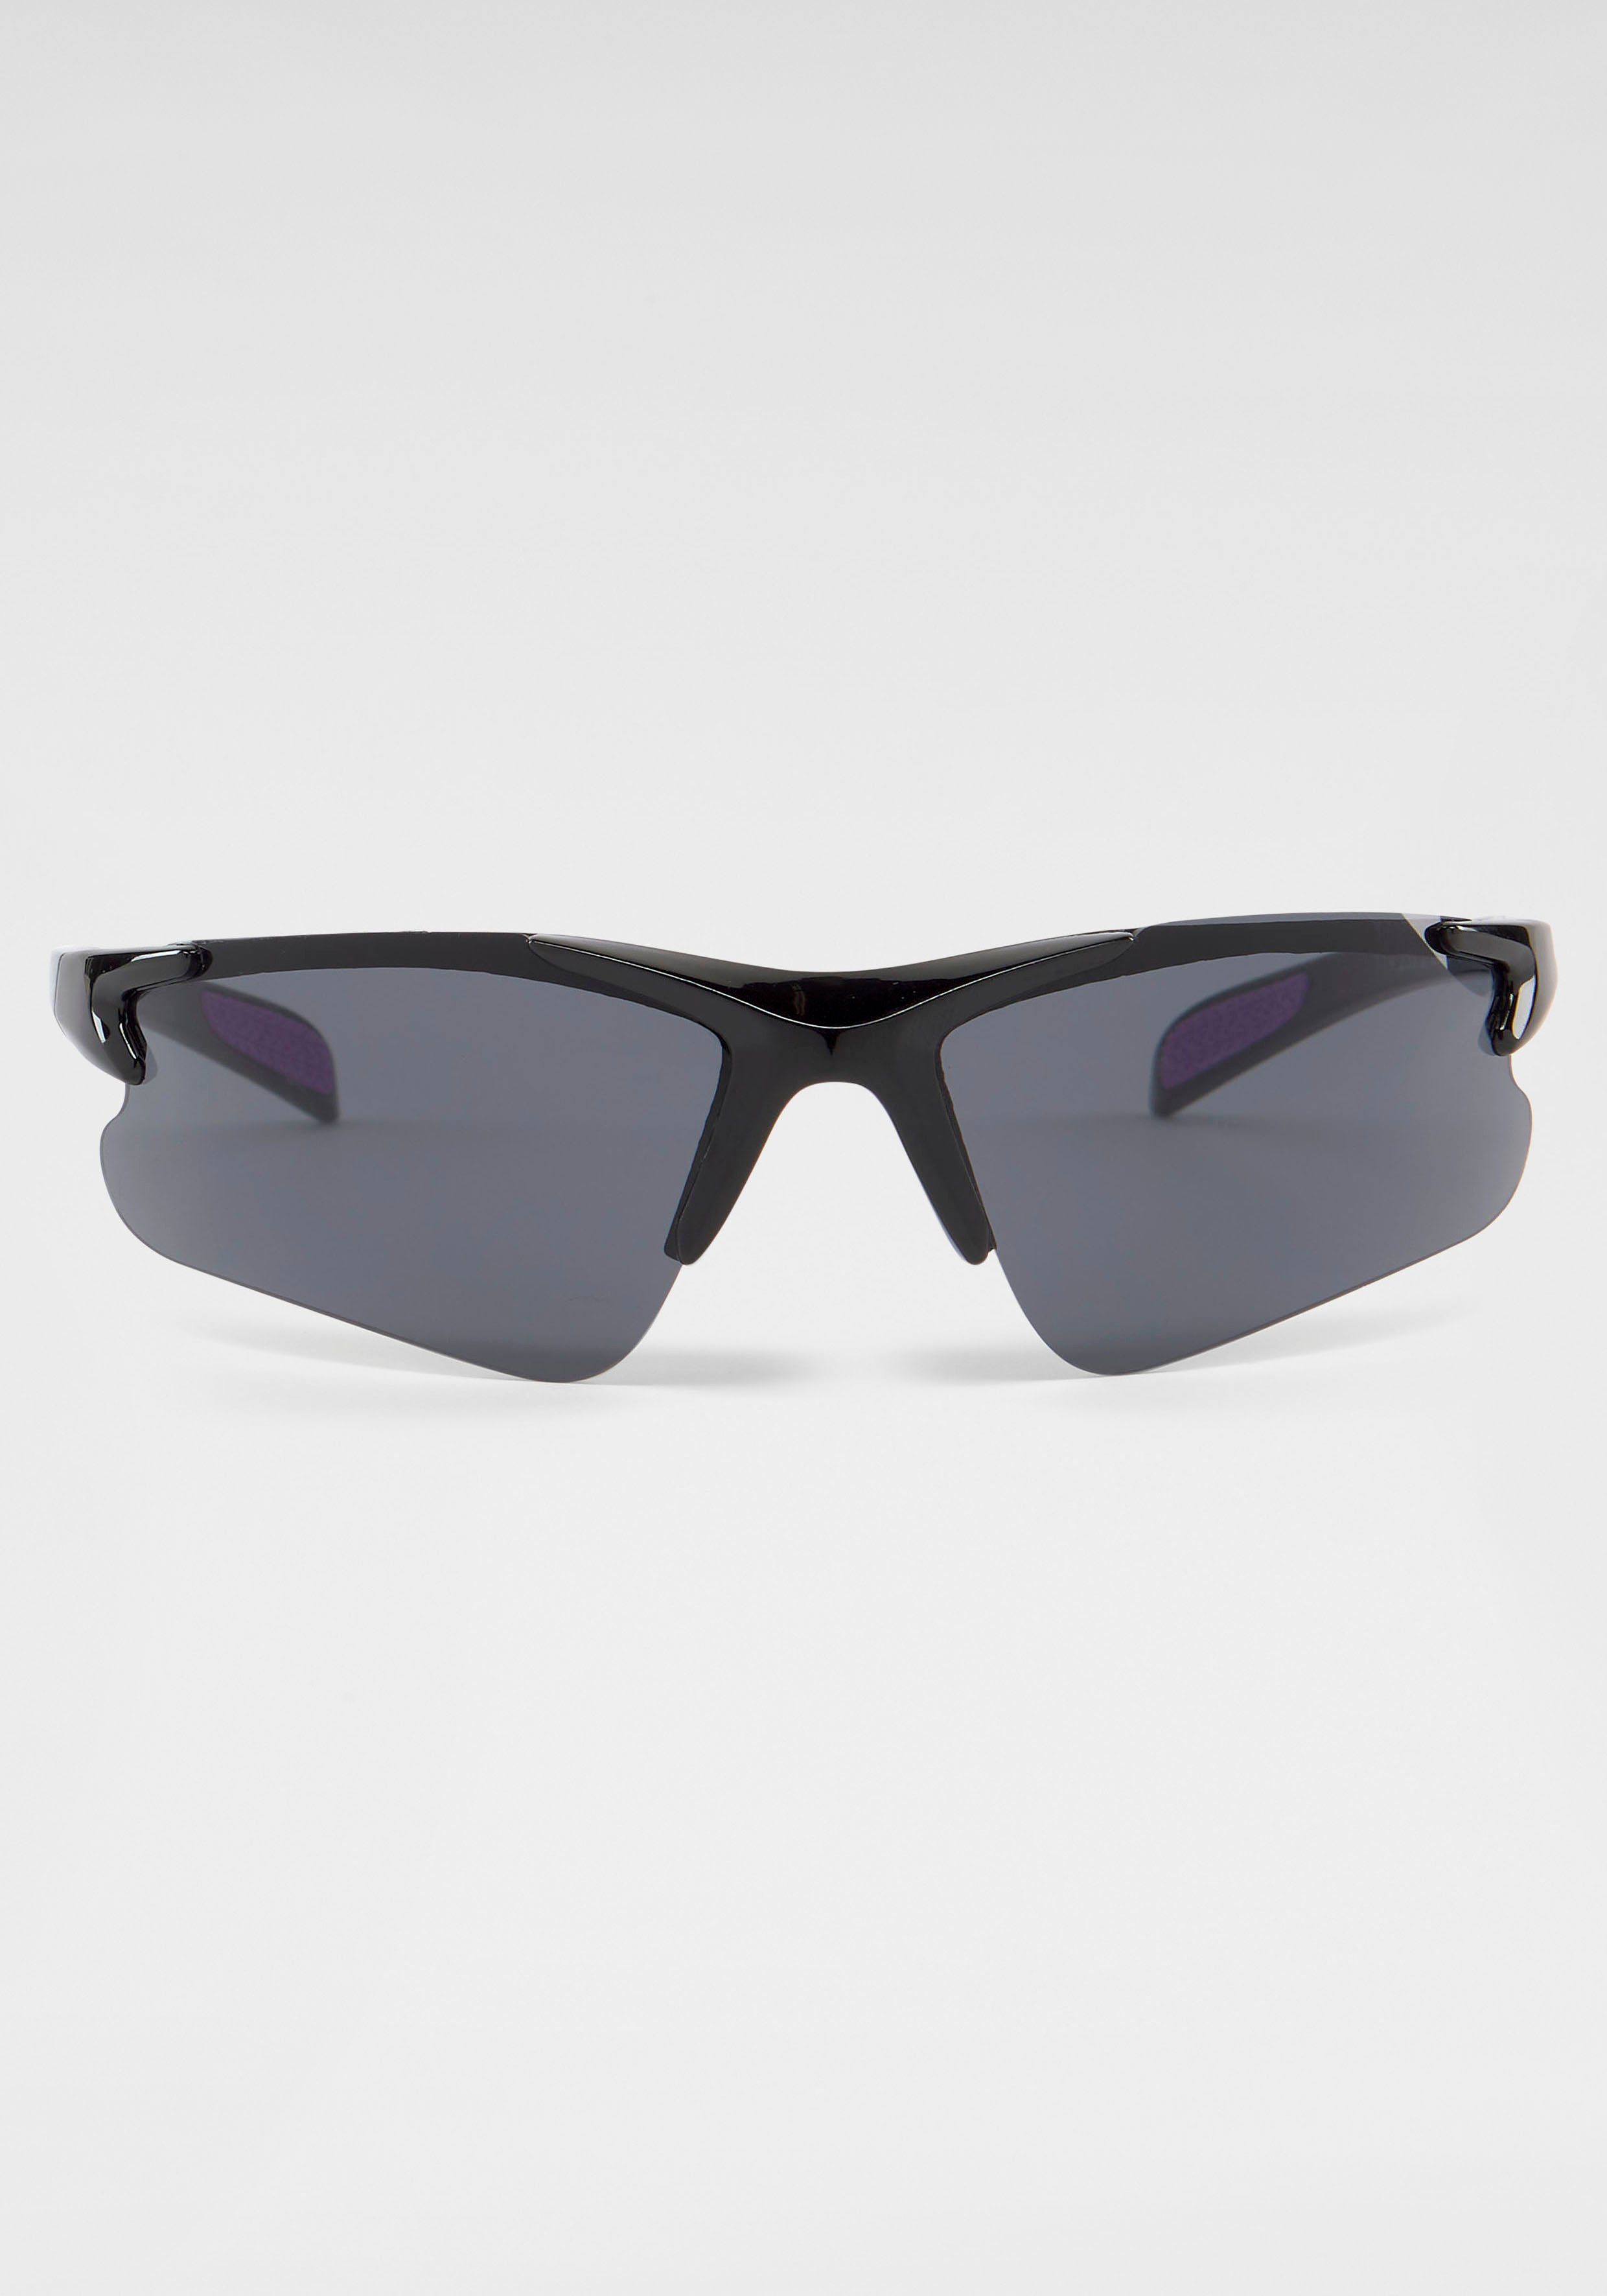 PRIMETTA Eyewear Sonnenbrille, Sportliche Sonnenbrille